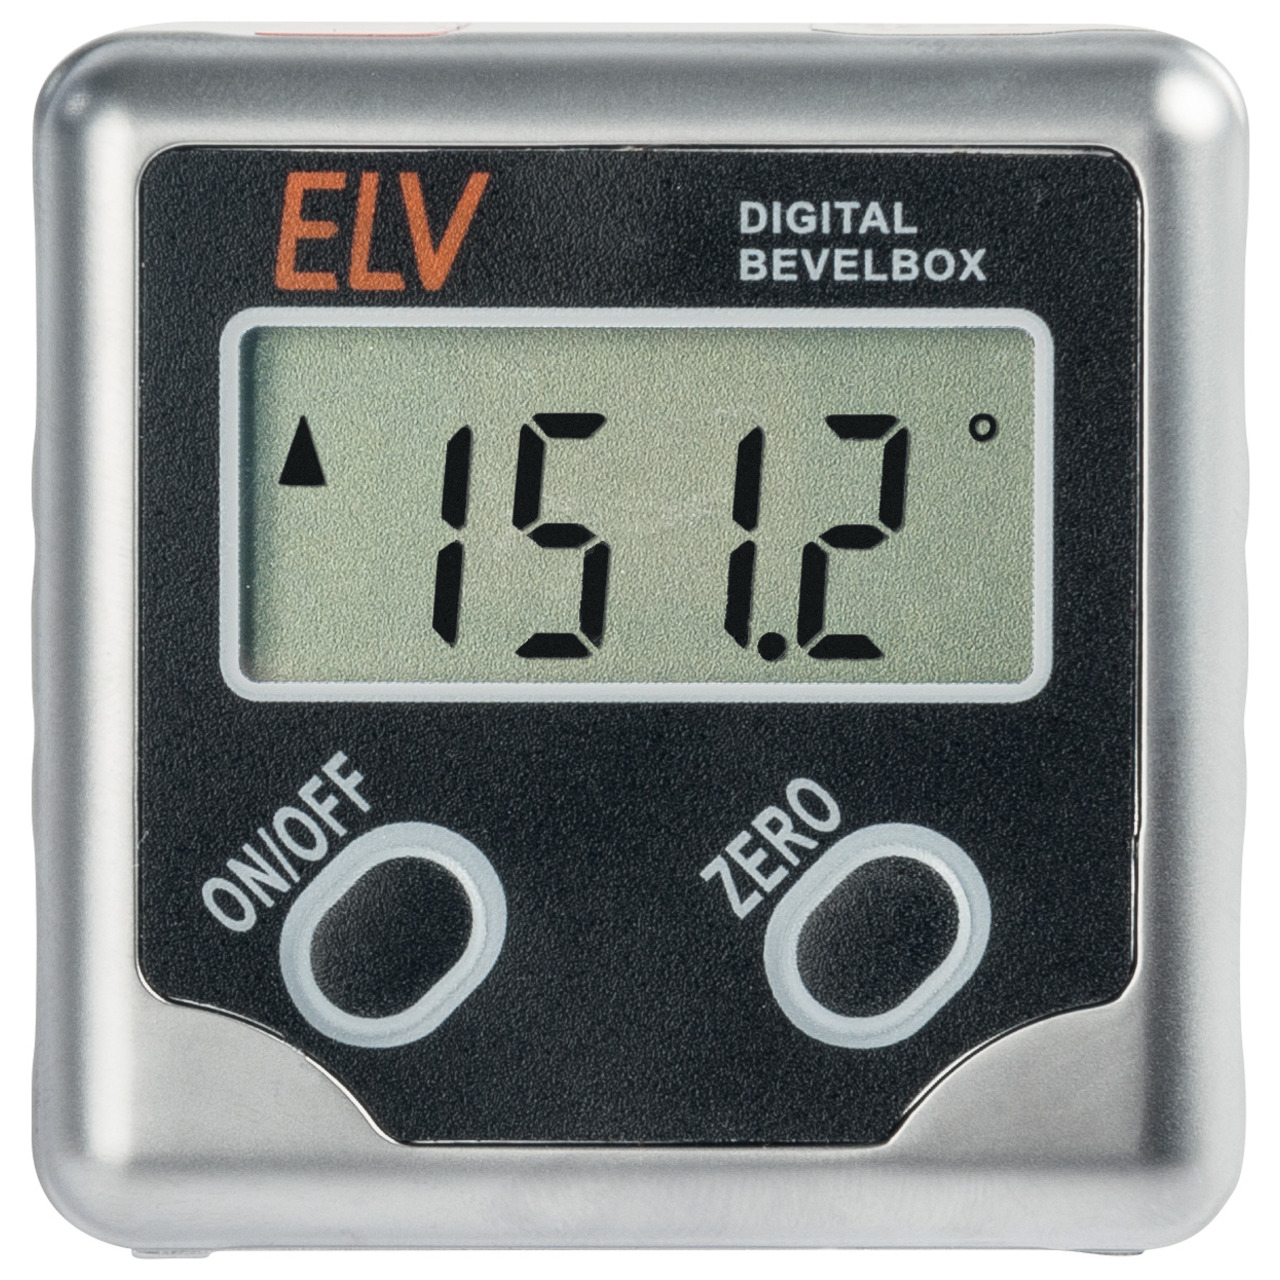 ELV Bevel Box 360- Neigungssensor- digitale Wasserwaage